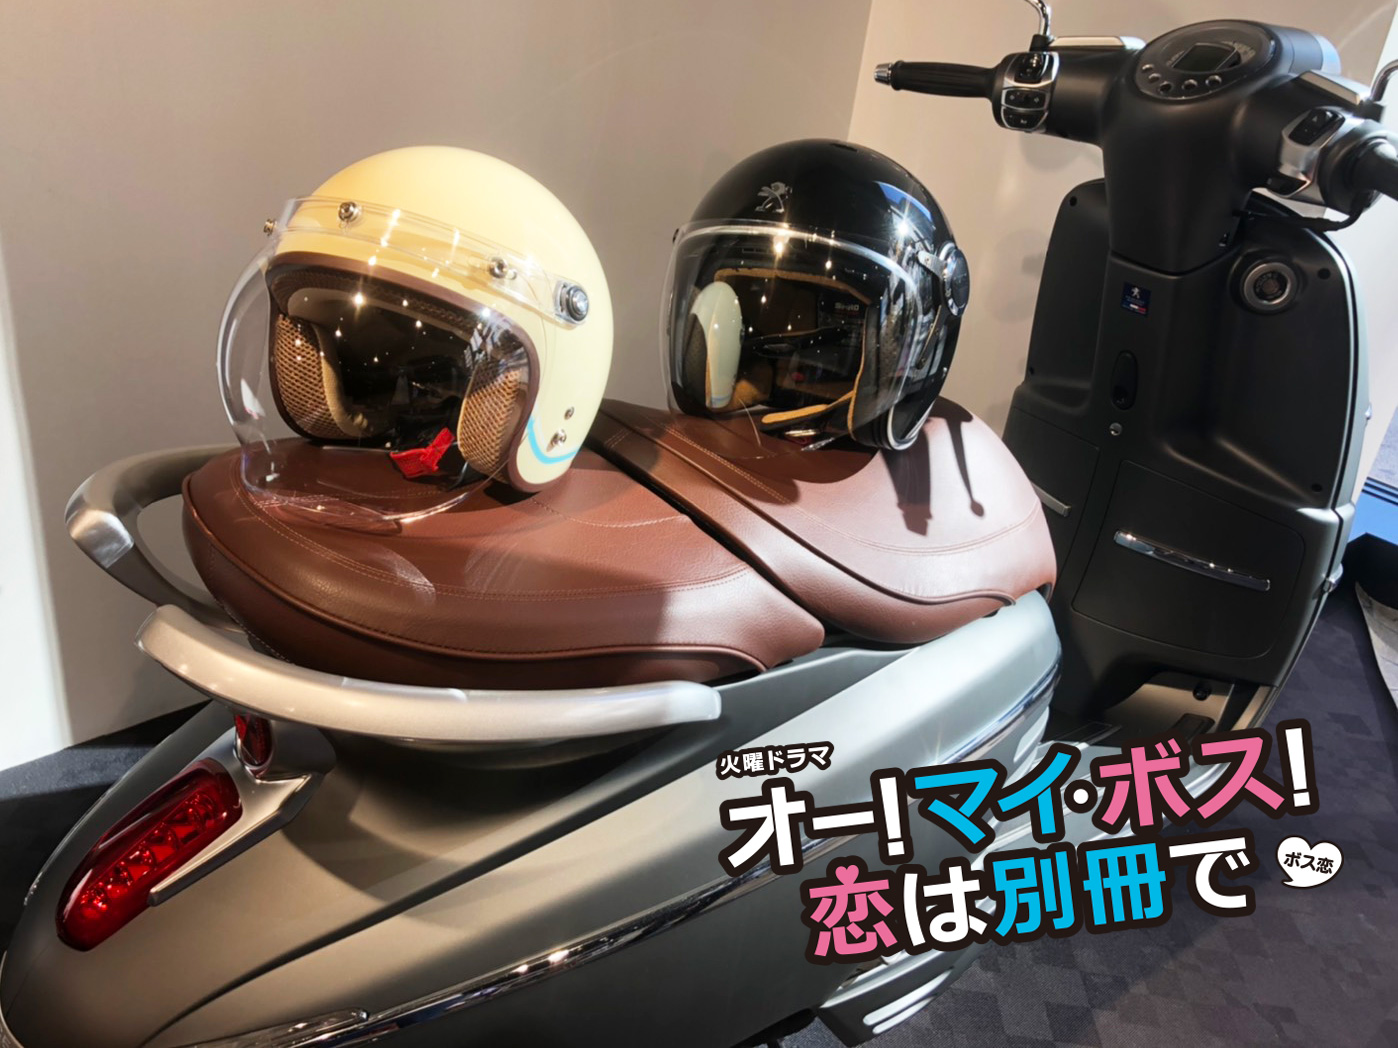 Tbs系 新火曜ドラマ ボス恋 に プジョー ジャンゴ が劇用バイクとして採用されています Aidea Style アイディア スタイル